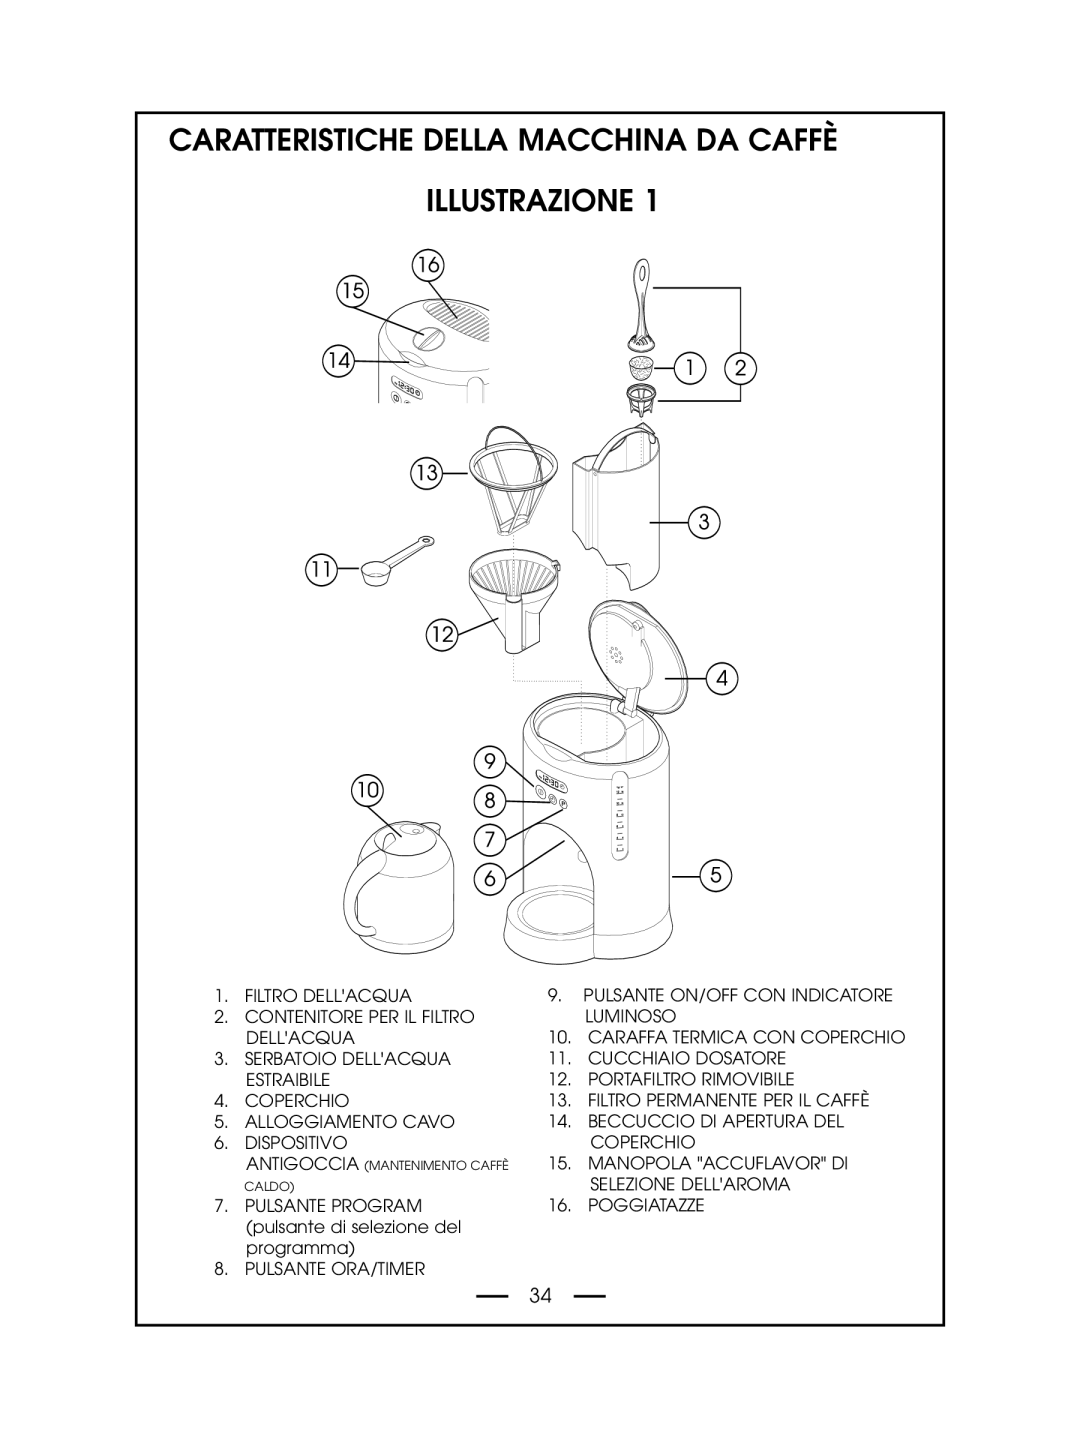 DeLonghi DCM485 instruction manual Caratteristiche Della Macchina Da Caffè Illustrazione, Caraffa Termica Con Coperchio 